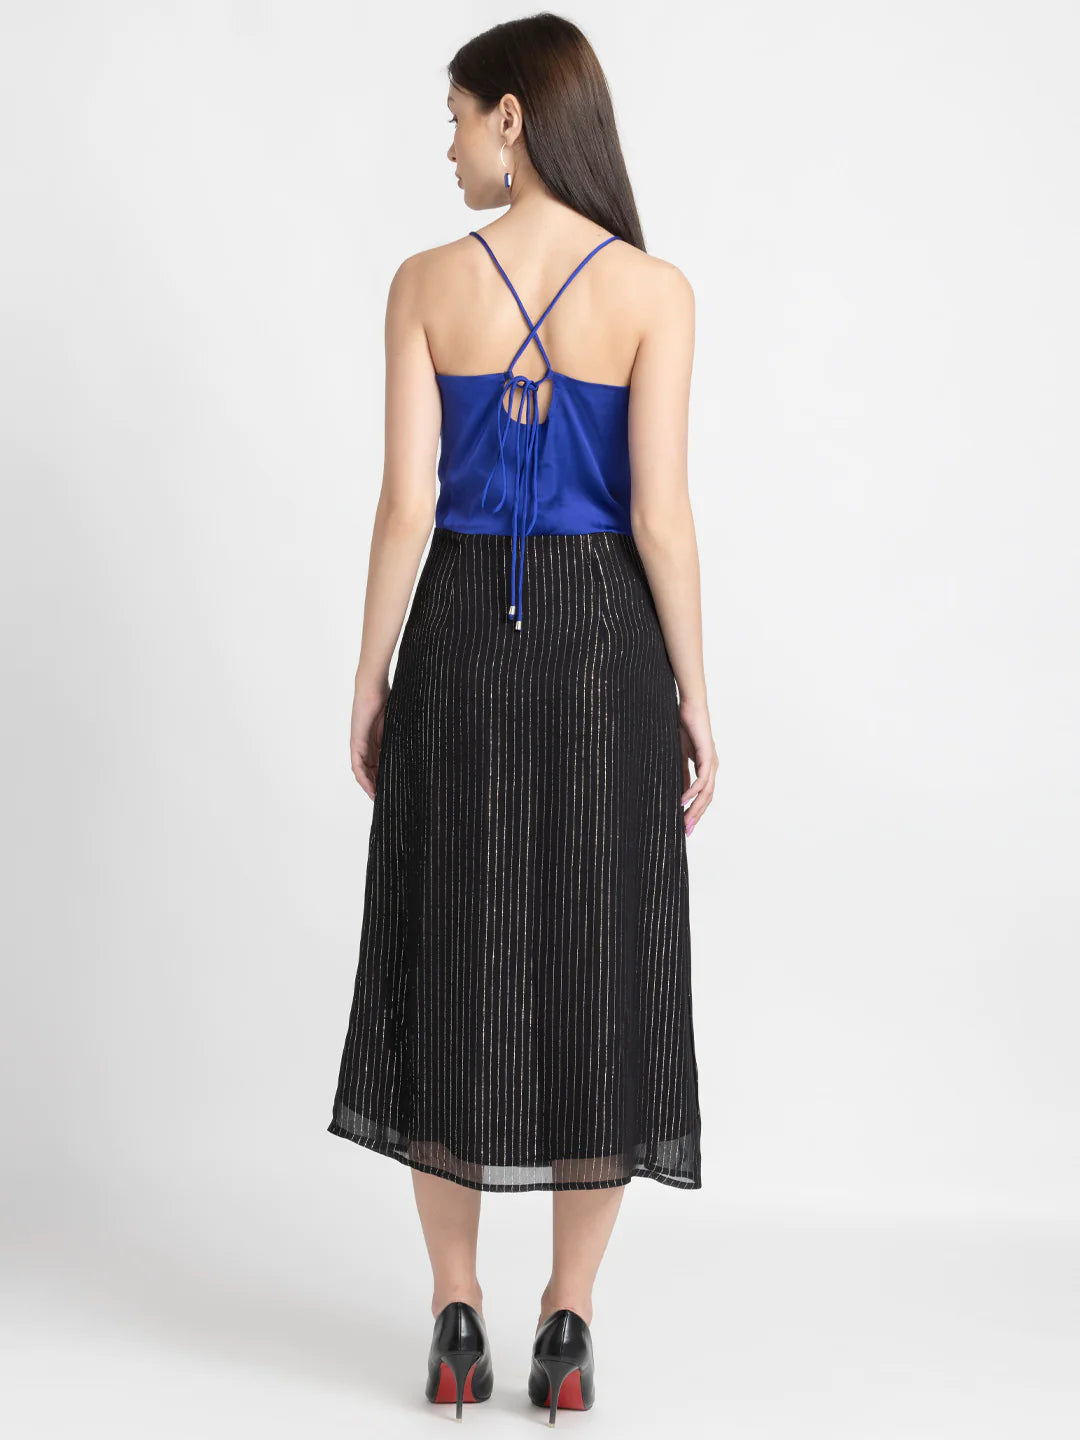 Blue & Black Midi Dress | Satin & Lurex Glam Midi Dress